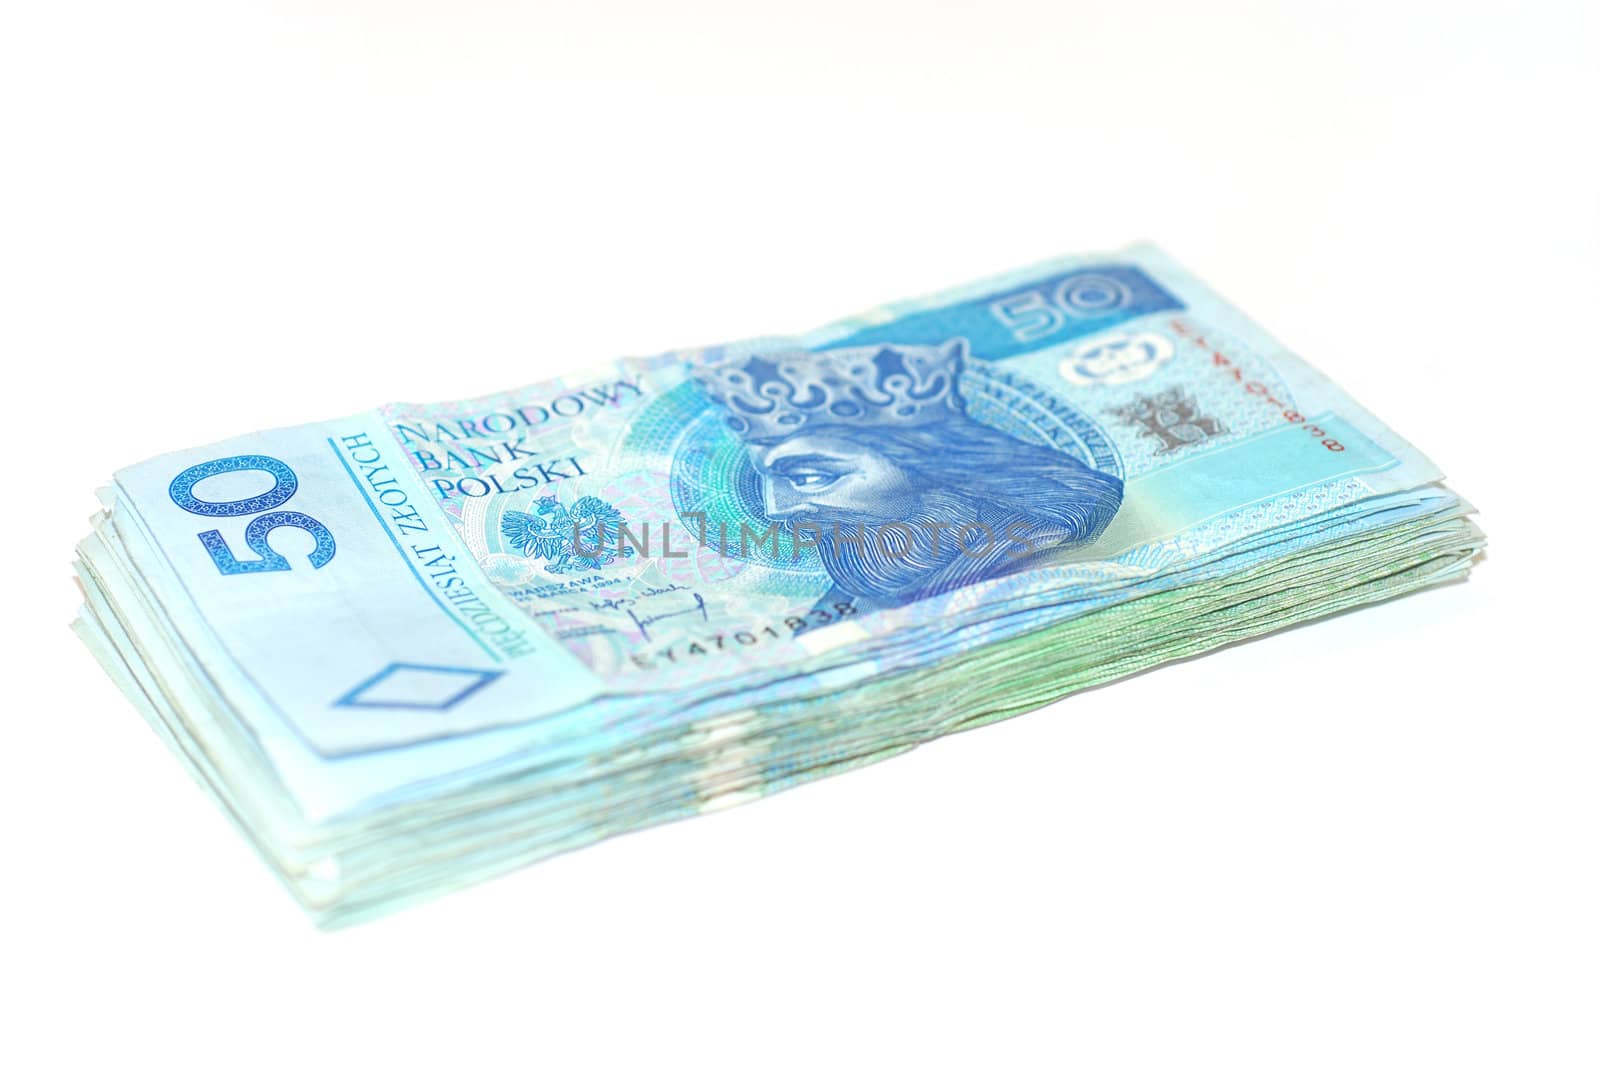 Banknotes 50 PLN. Polish currency. Banknoty 50 zlotowe. Polska waluta.